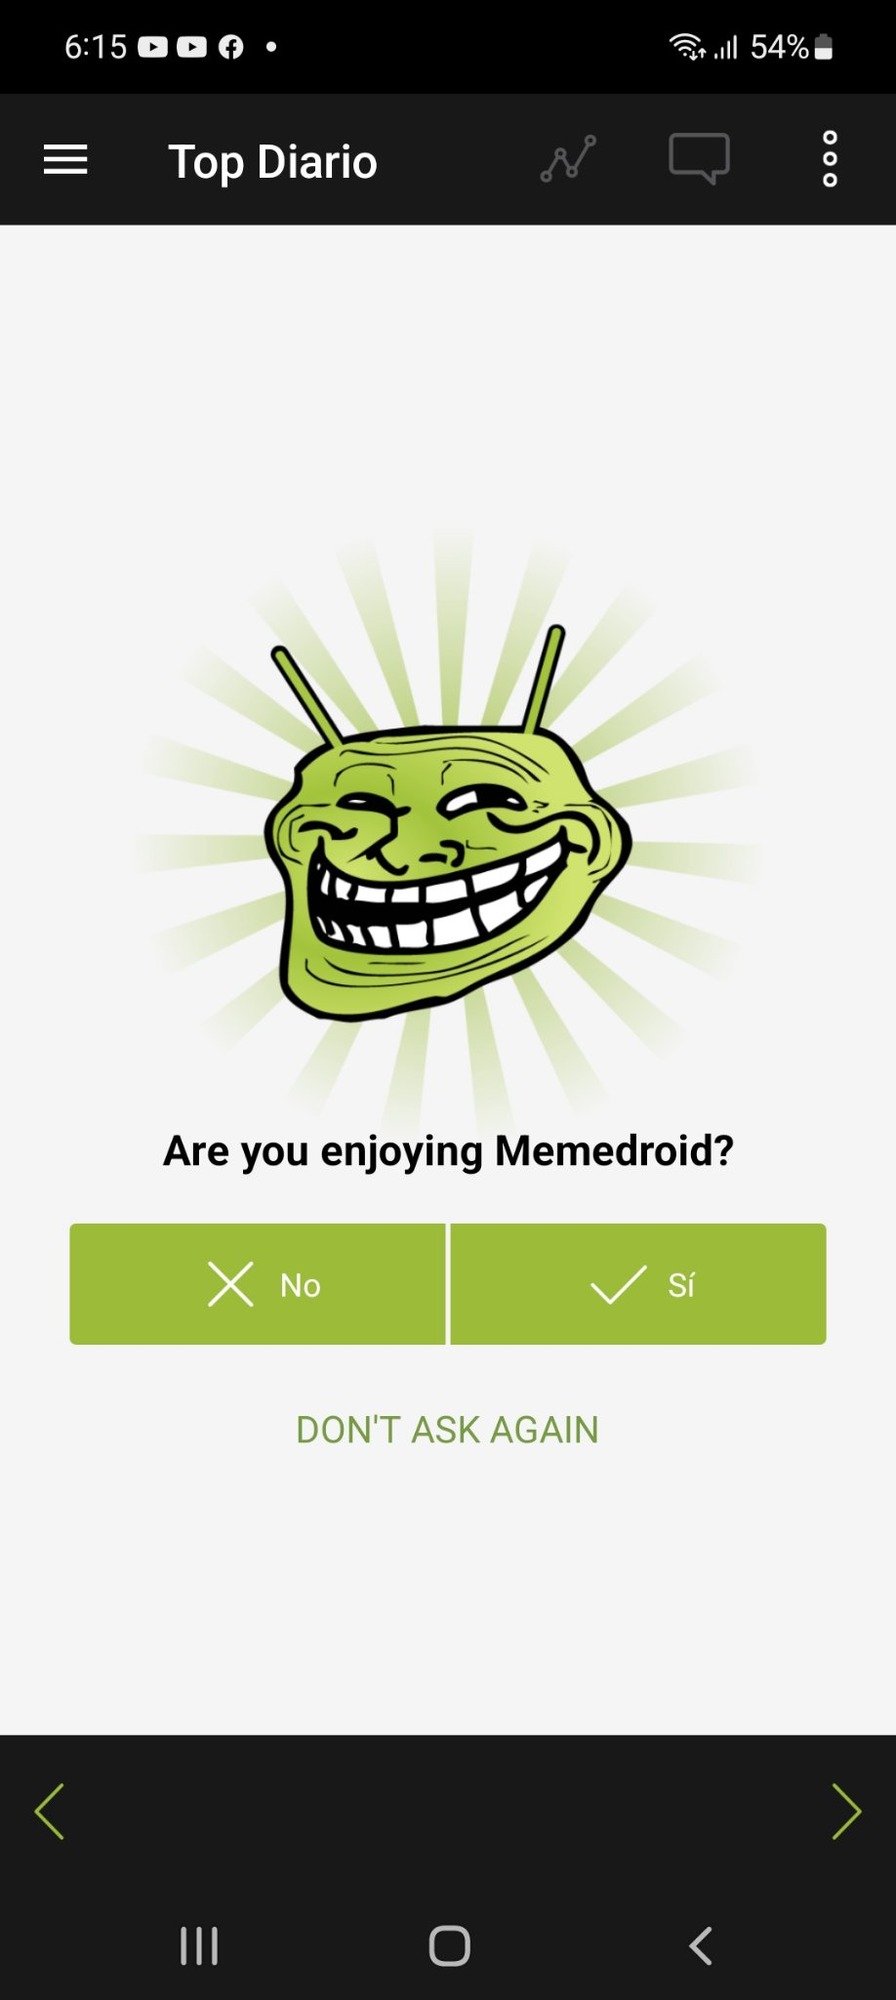 Estás disfrutando Memedroid?